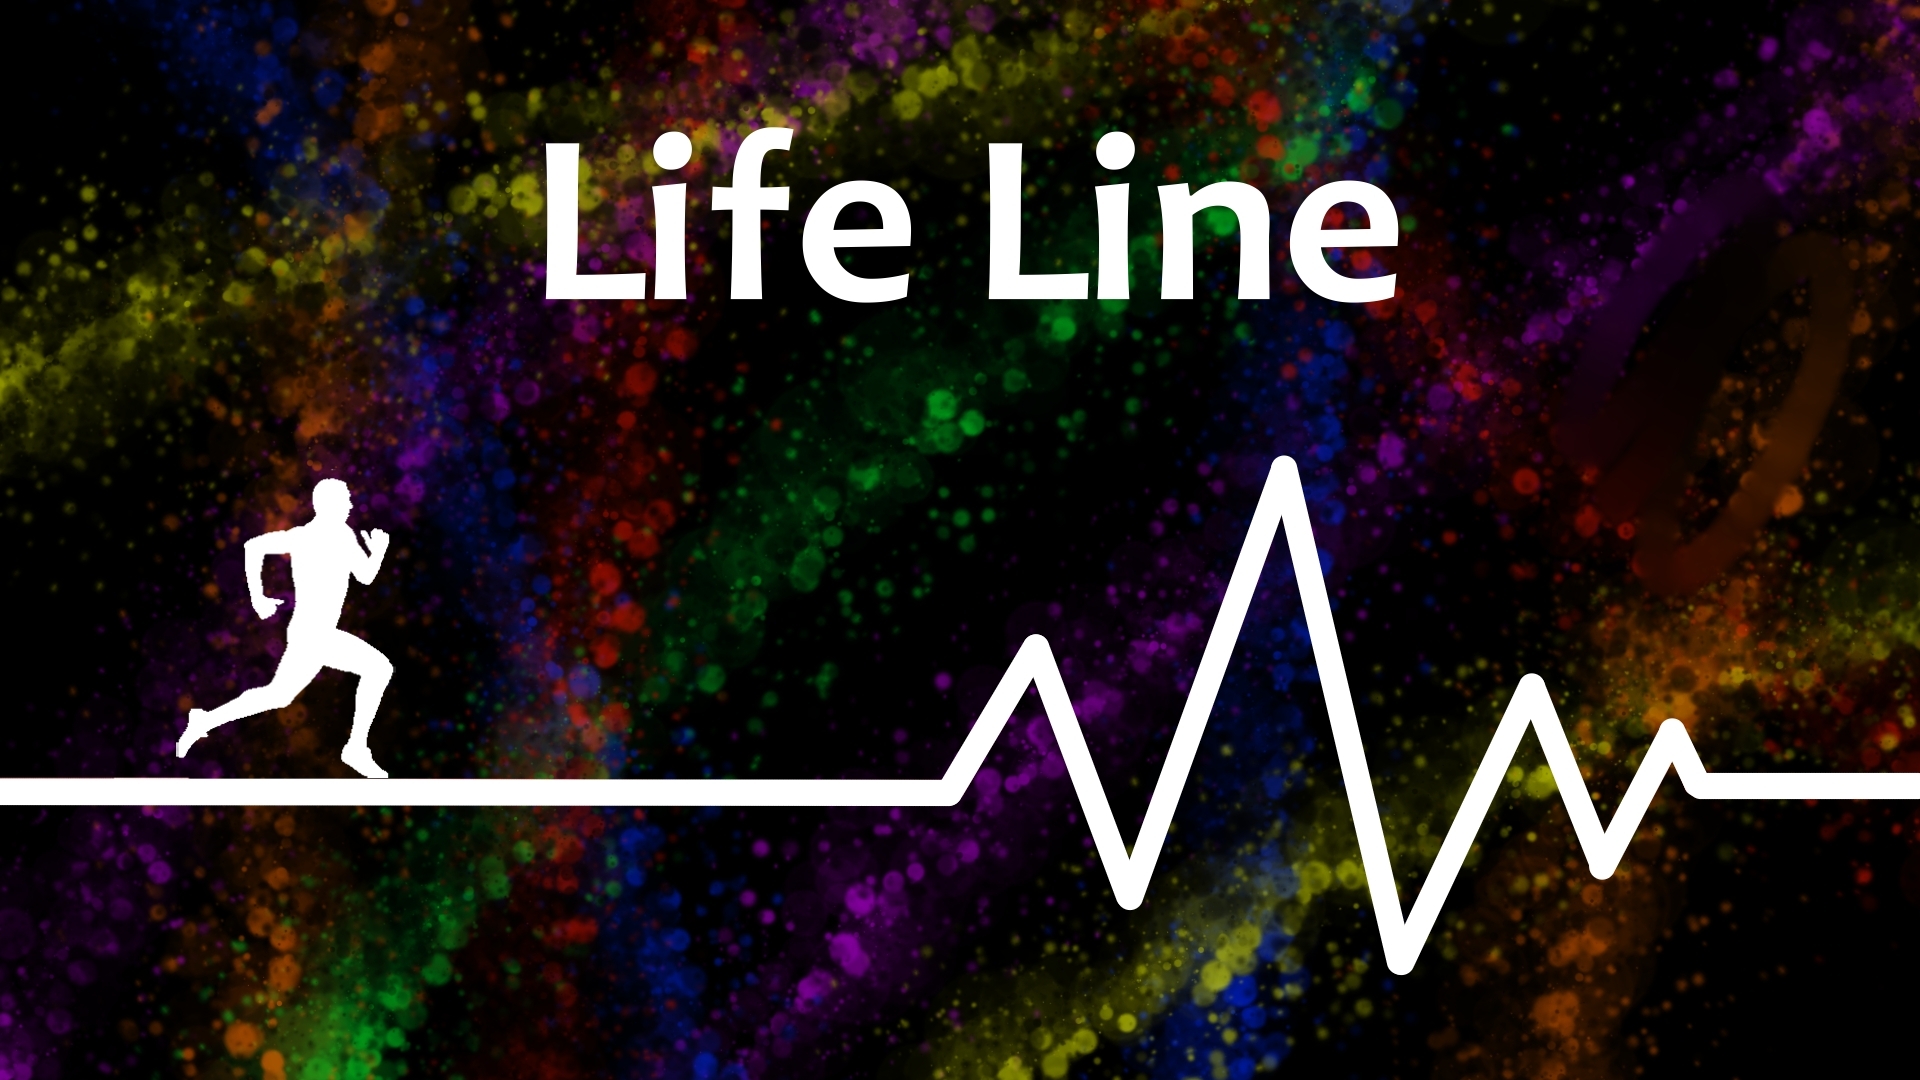 Life is line. Лайф лайн. The Life of lines. Обои на ПК Апекс лайф лайн.